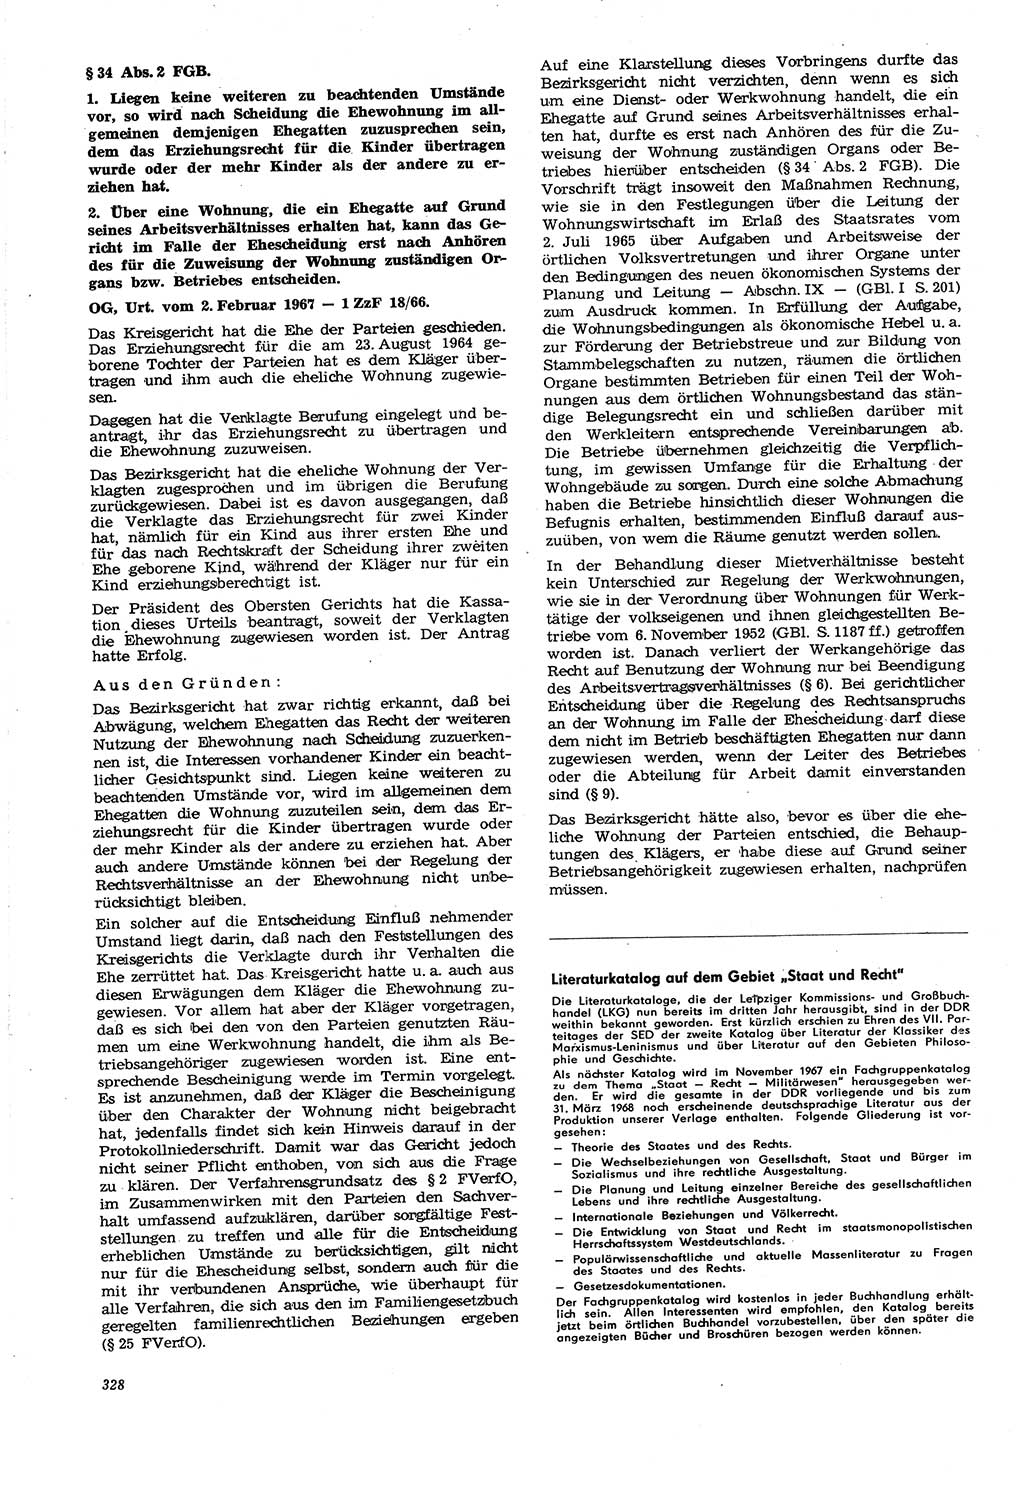 Neue Justiz (NJ), Zeitschrift für Recht und Rechtswissenschaft [Deutsche Demokratische Republik (DDR)], 21. Jahrgang 1967, Seite 328 (NJ DDR 1967, S. 328)